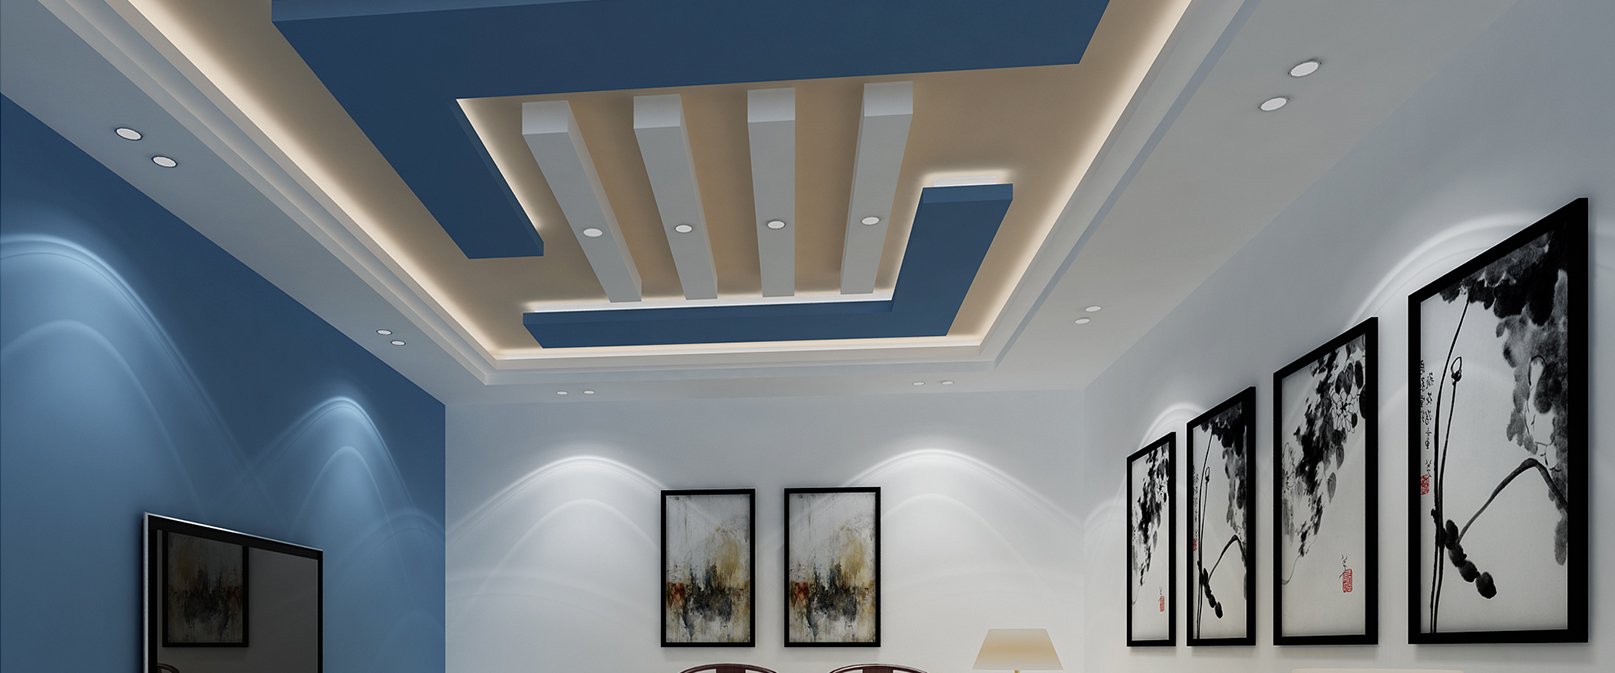 False Ceiling & Lighting Design in Chennai